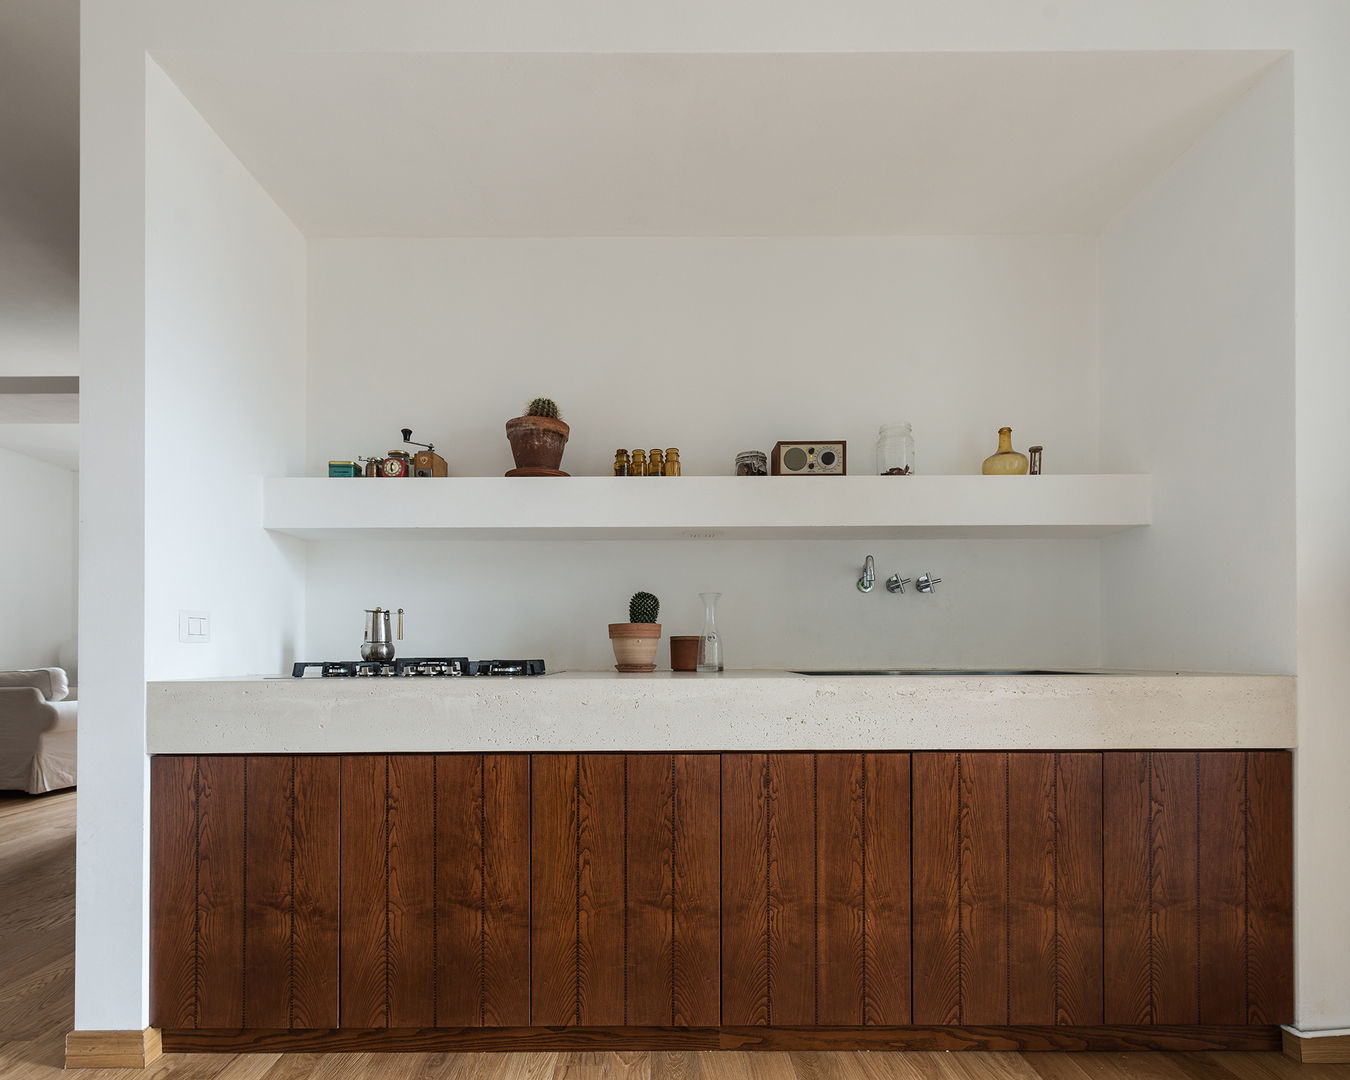 Woodboard House: Wohnungsrenovierung mit Charme, Atelier Blank Atelier Blank Minimalist Mutfak